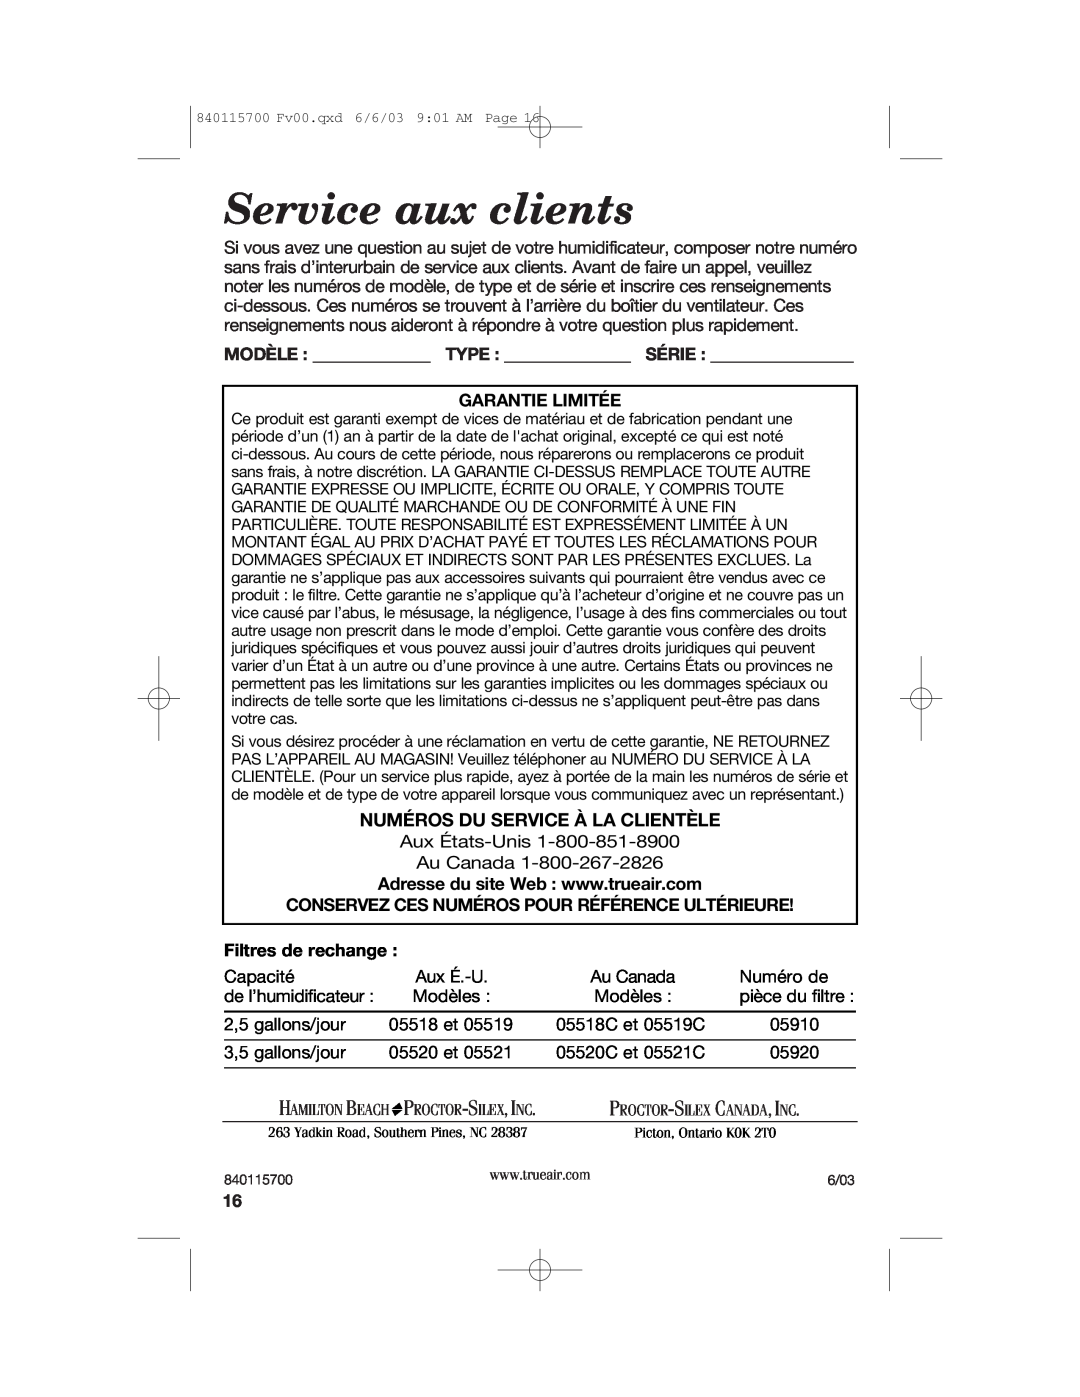 Hamilton Beach 05520C Service aux clients, Numéros Du Service À La Clientèle, Garantie Limitée, Filtres de rechange 